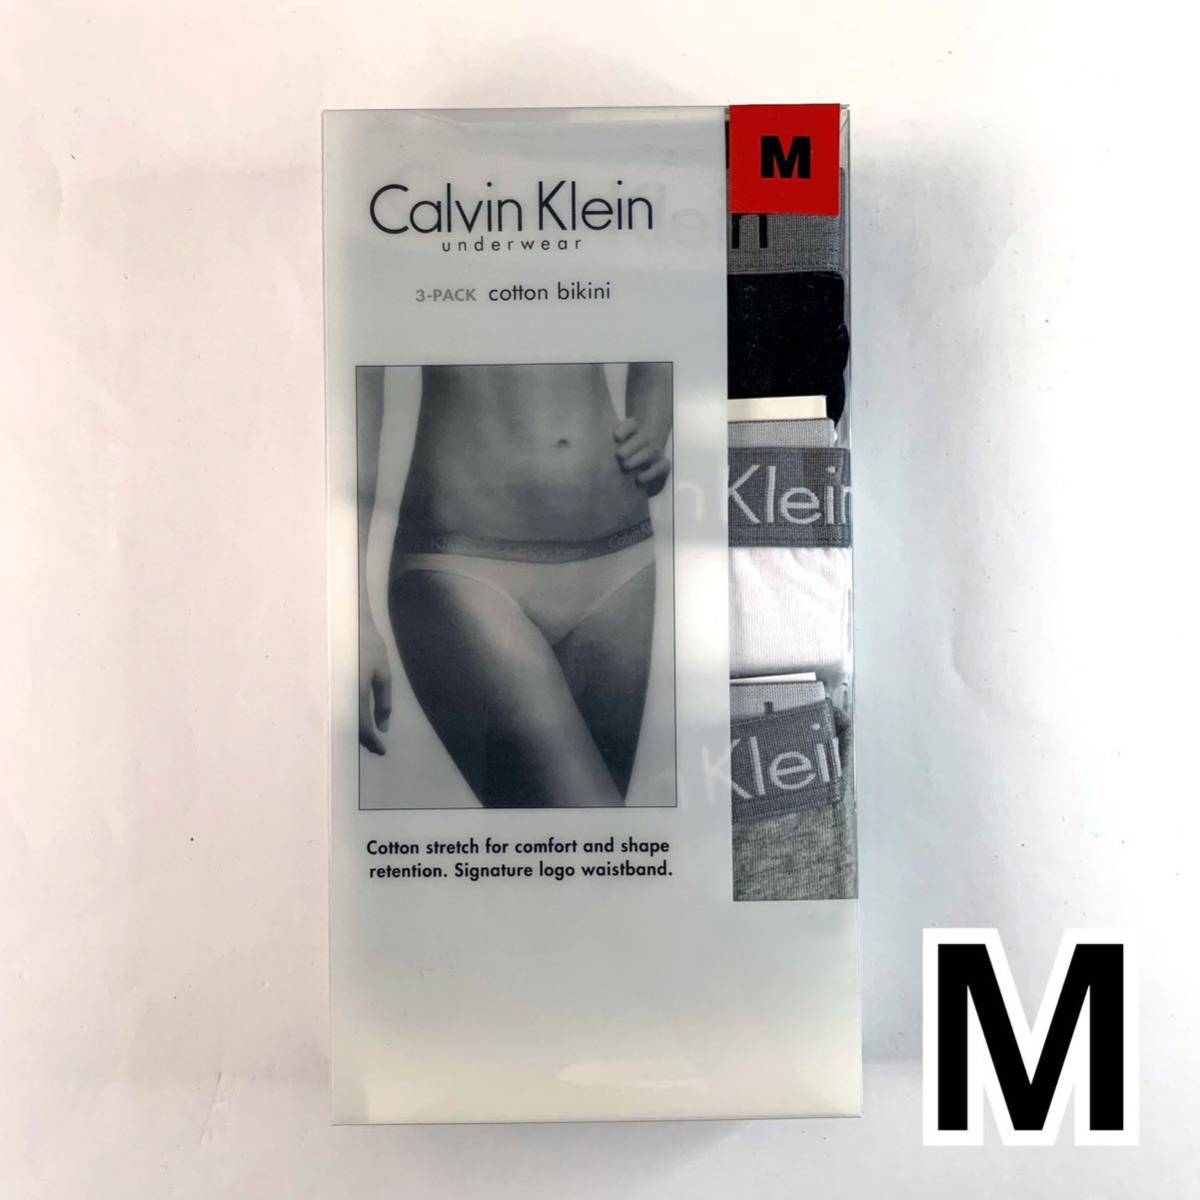 Calvin Klein アンダーウェア コットンビキニ Mサイズ 3枚セット レディース 送料無料 最短発送 下着 女性下着 ショーツ パンツ パンティー_画像1